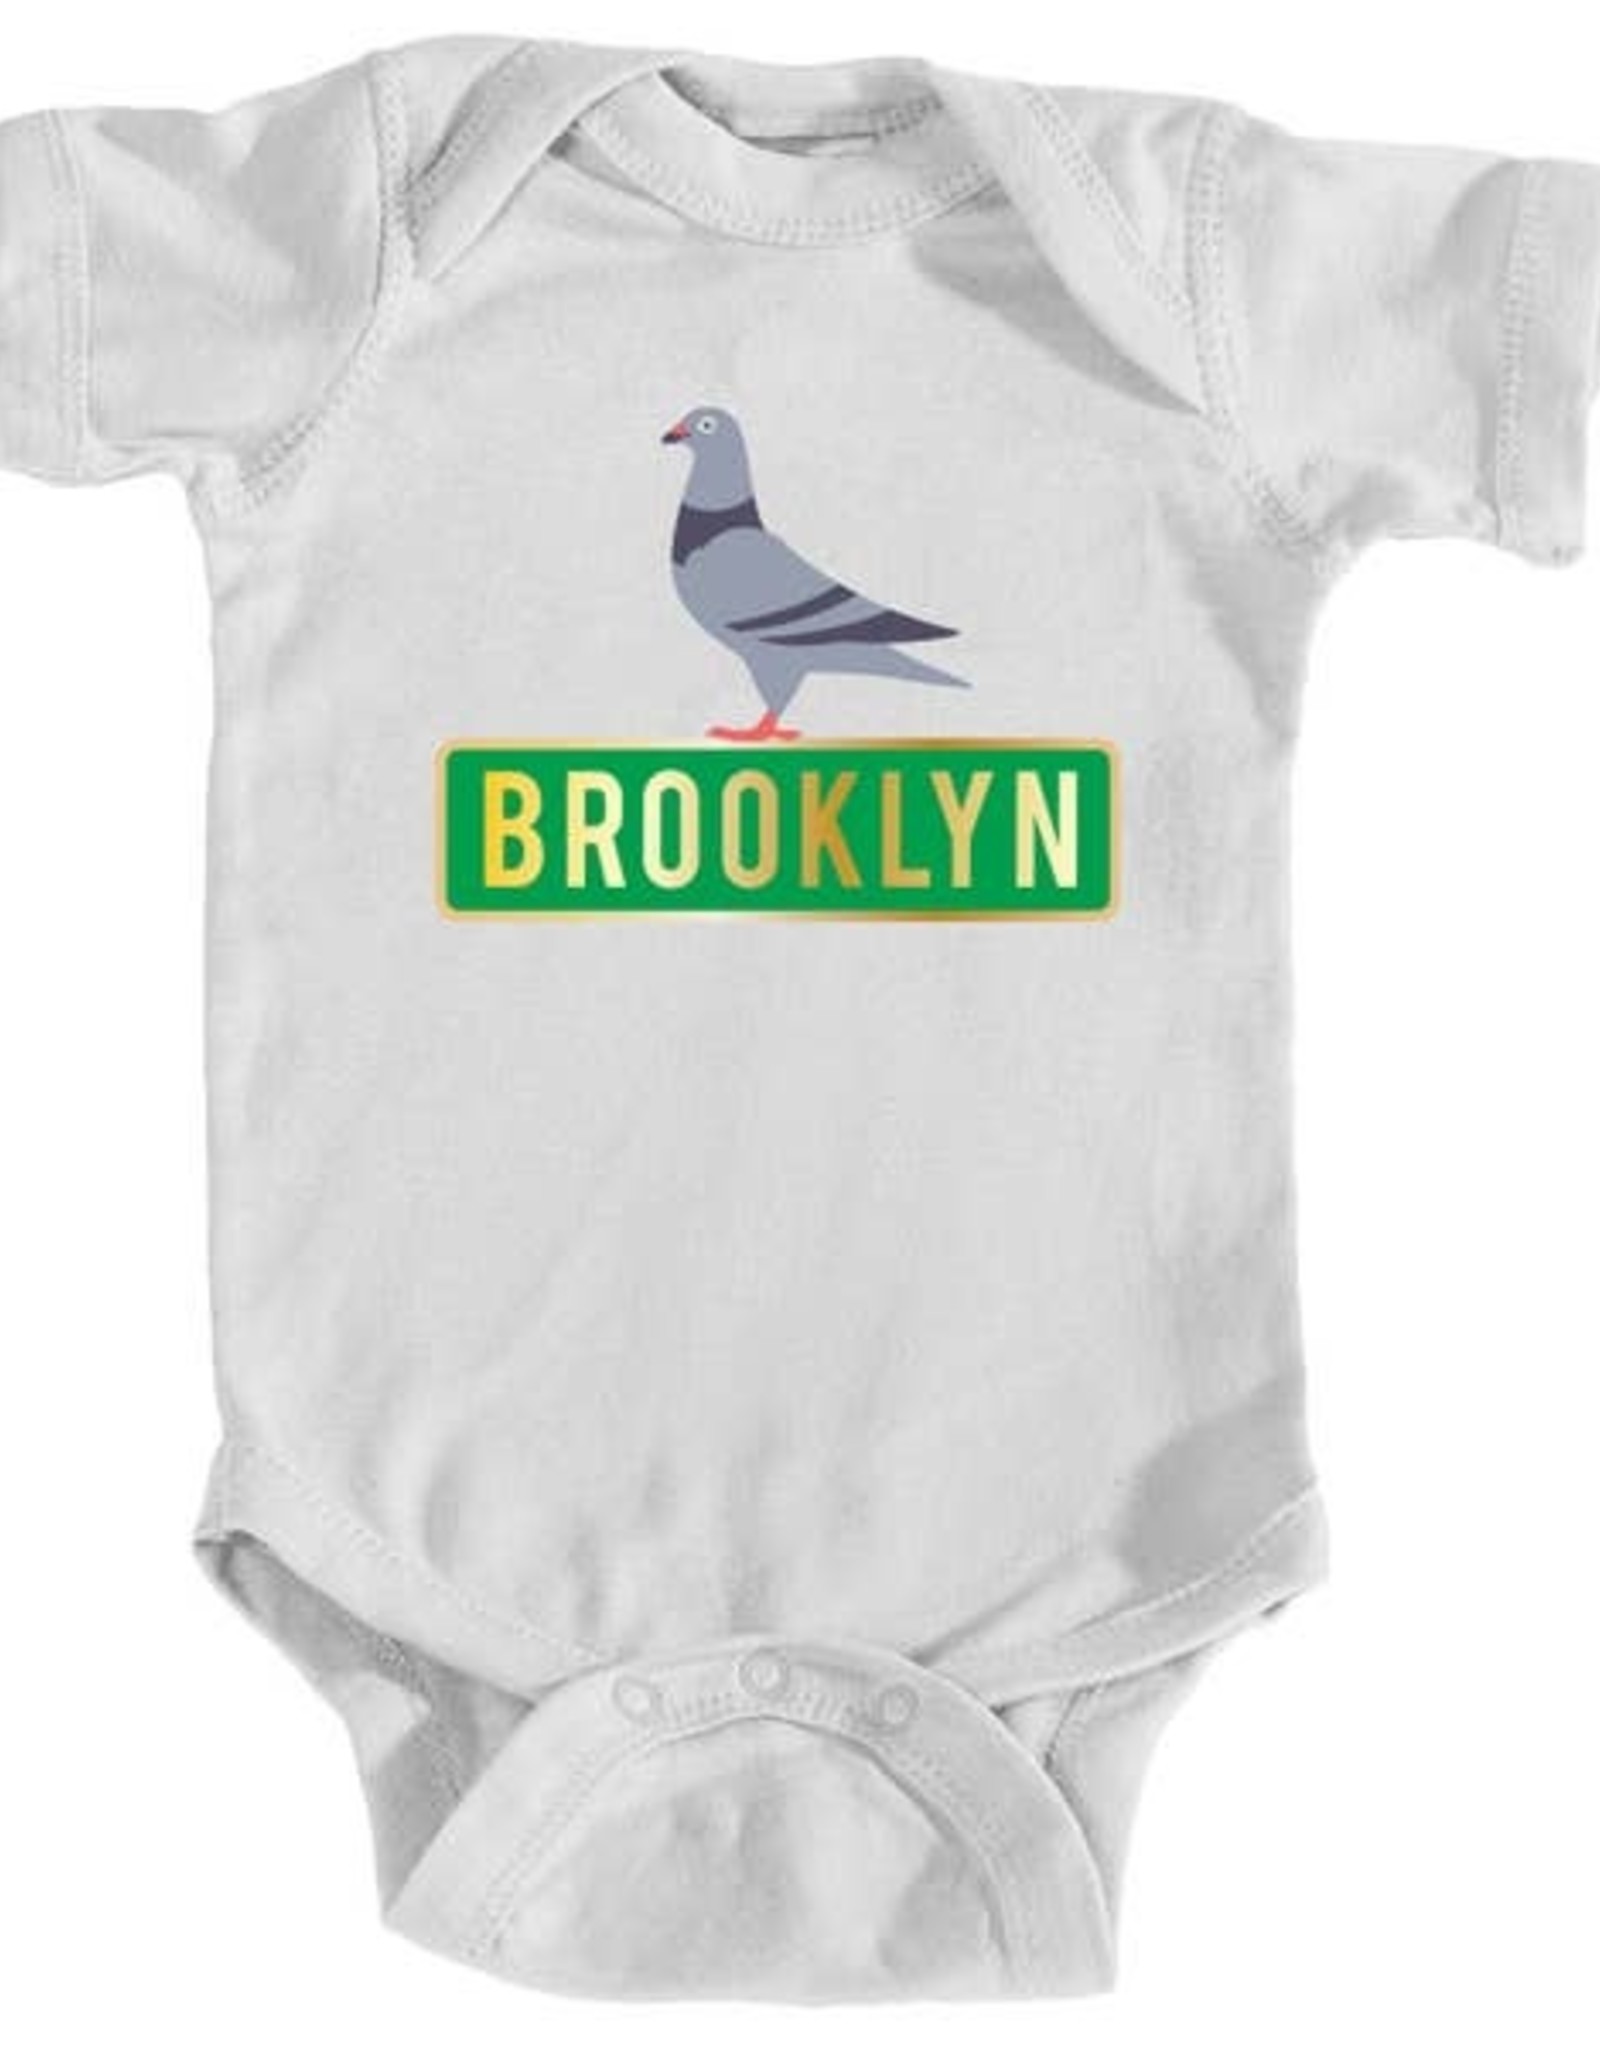 Miniflexkids Brooklyn Pigeon Onesie